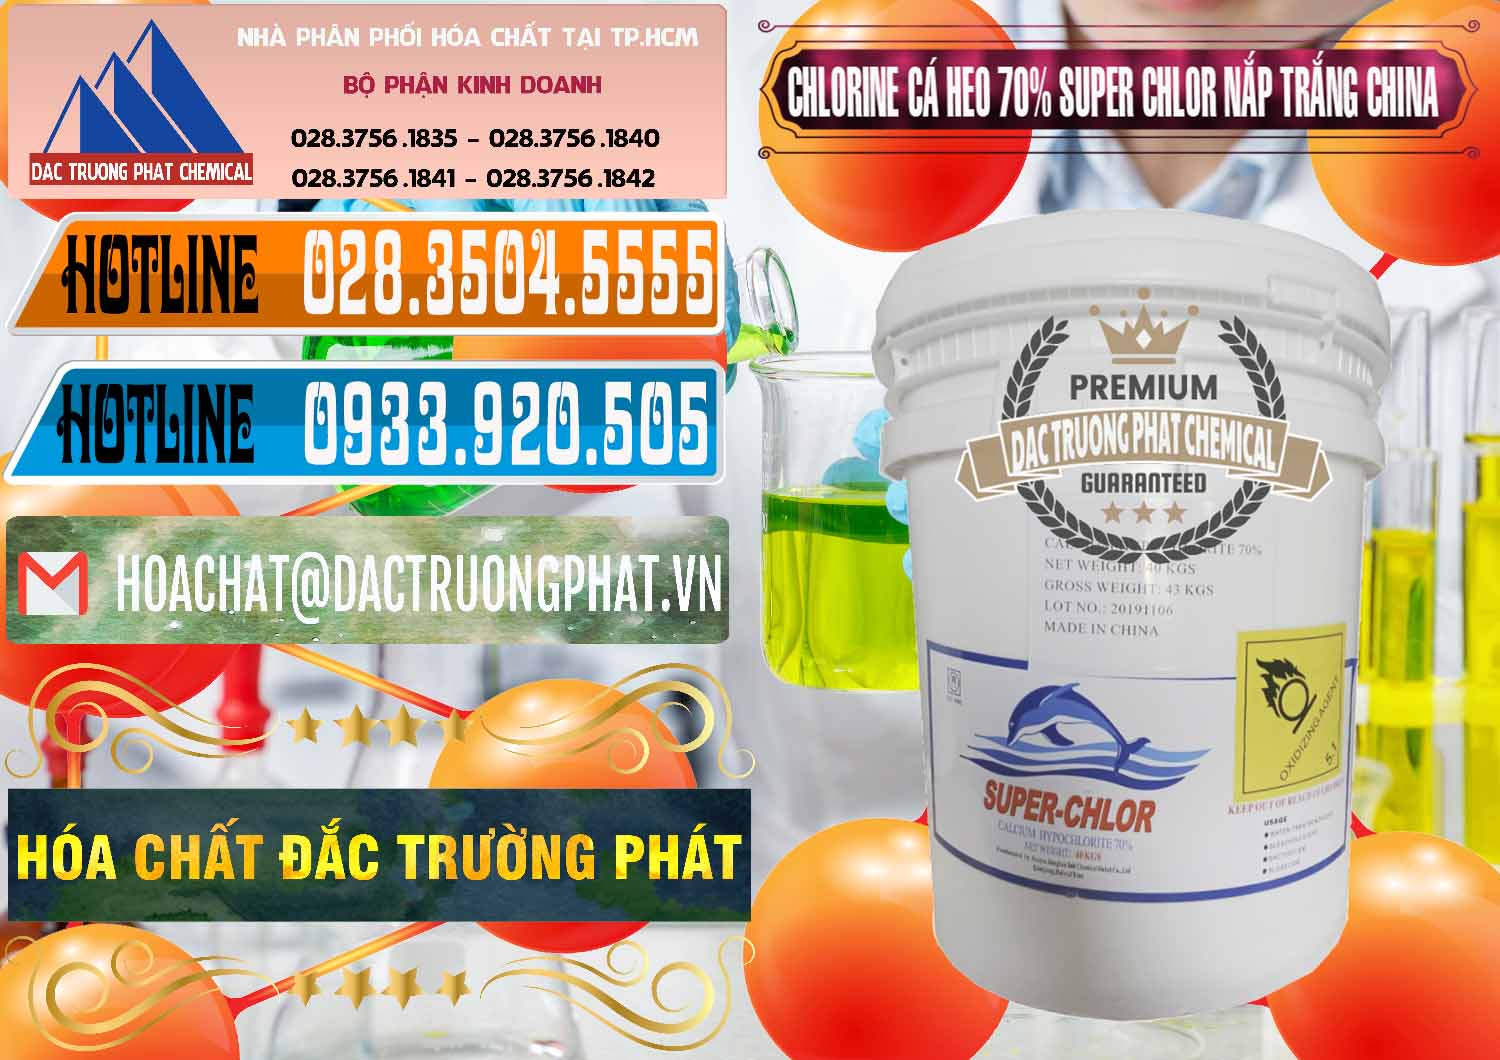 Nơi bán ( cung cấp ) Clorin - Chlorine Cá Heo 70% Super Chlor Nắp Trắng Trung Quốc China - 0240 - Công ty chuyên phân phối - cung ứng hóa chất tại TP.HCM - stmp.net